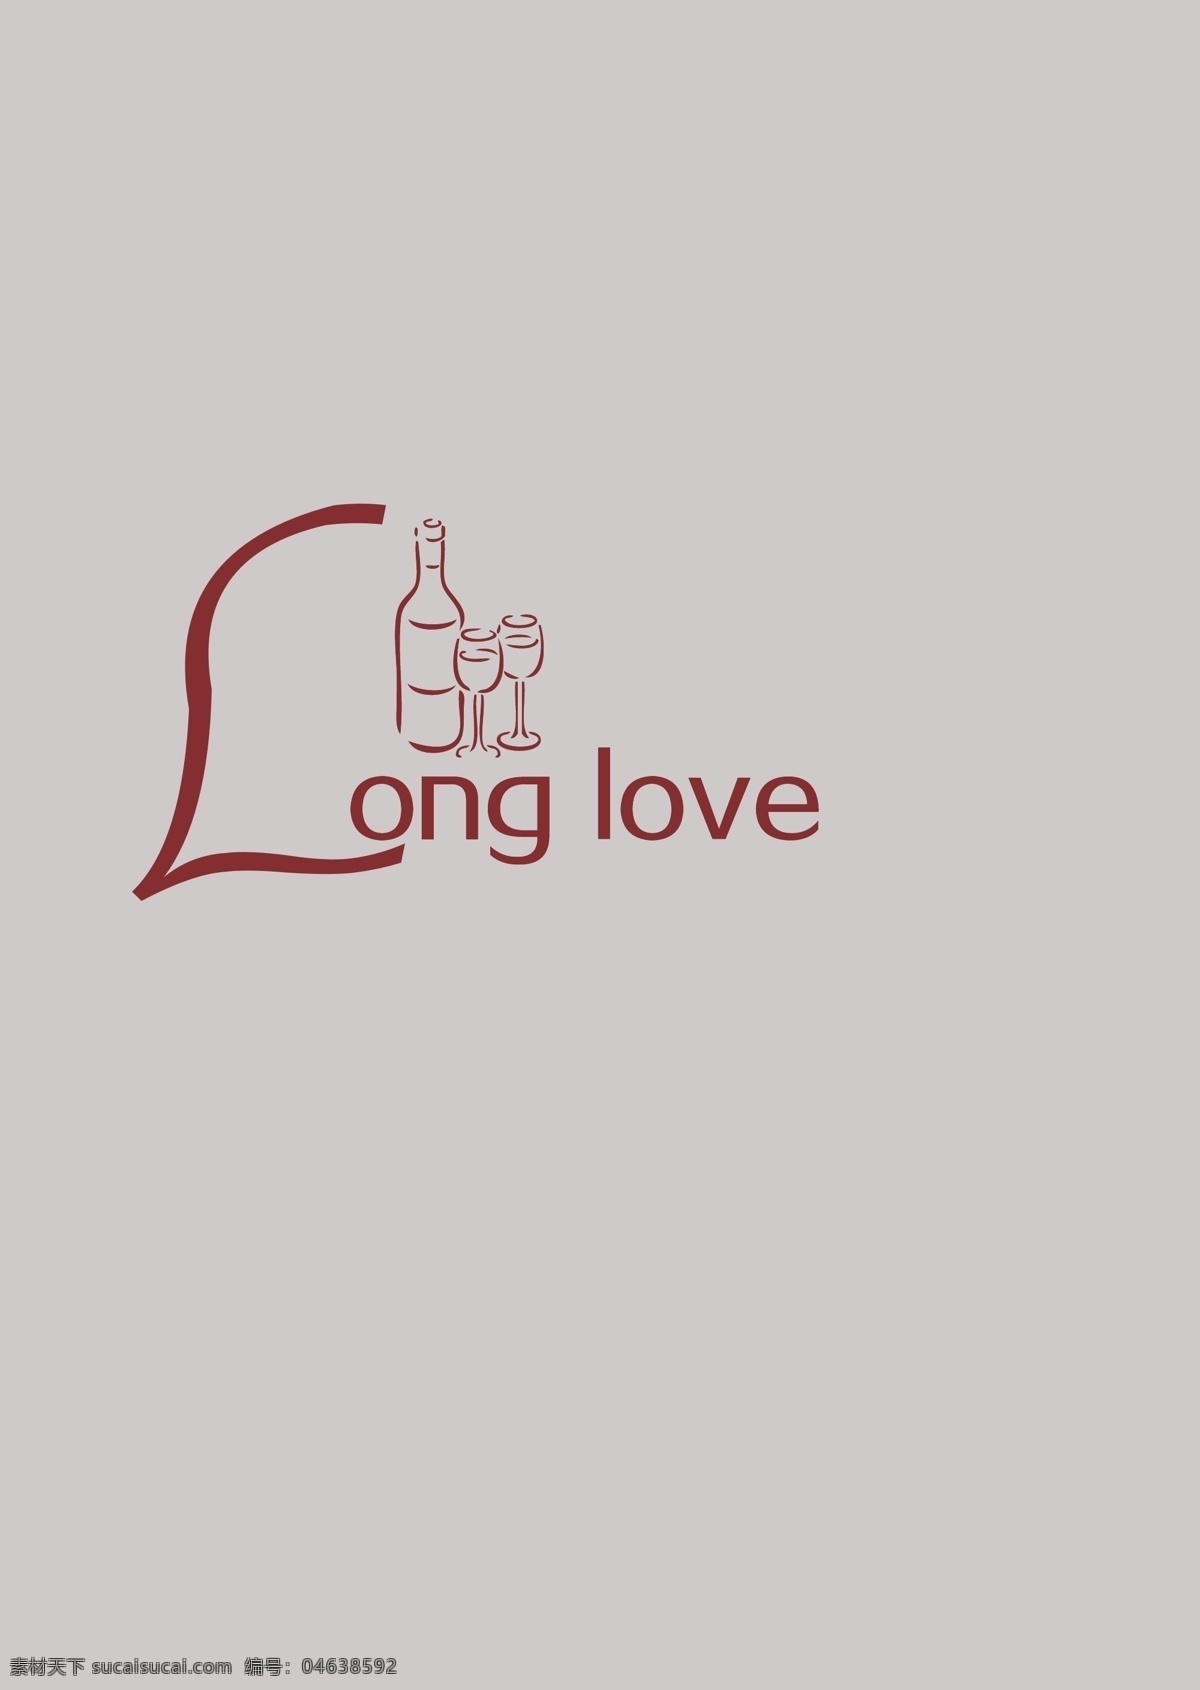 西餐厅 logo long love 红酒 高脚杯 时尚大方 logo设计 企业 标志 标识标志图标 矢量